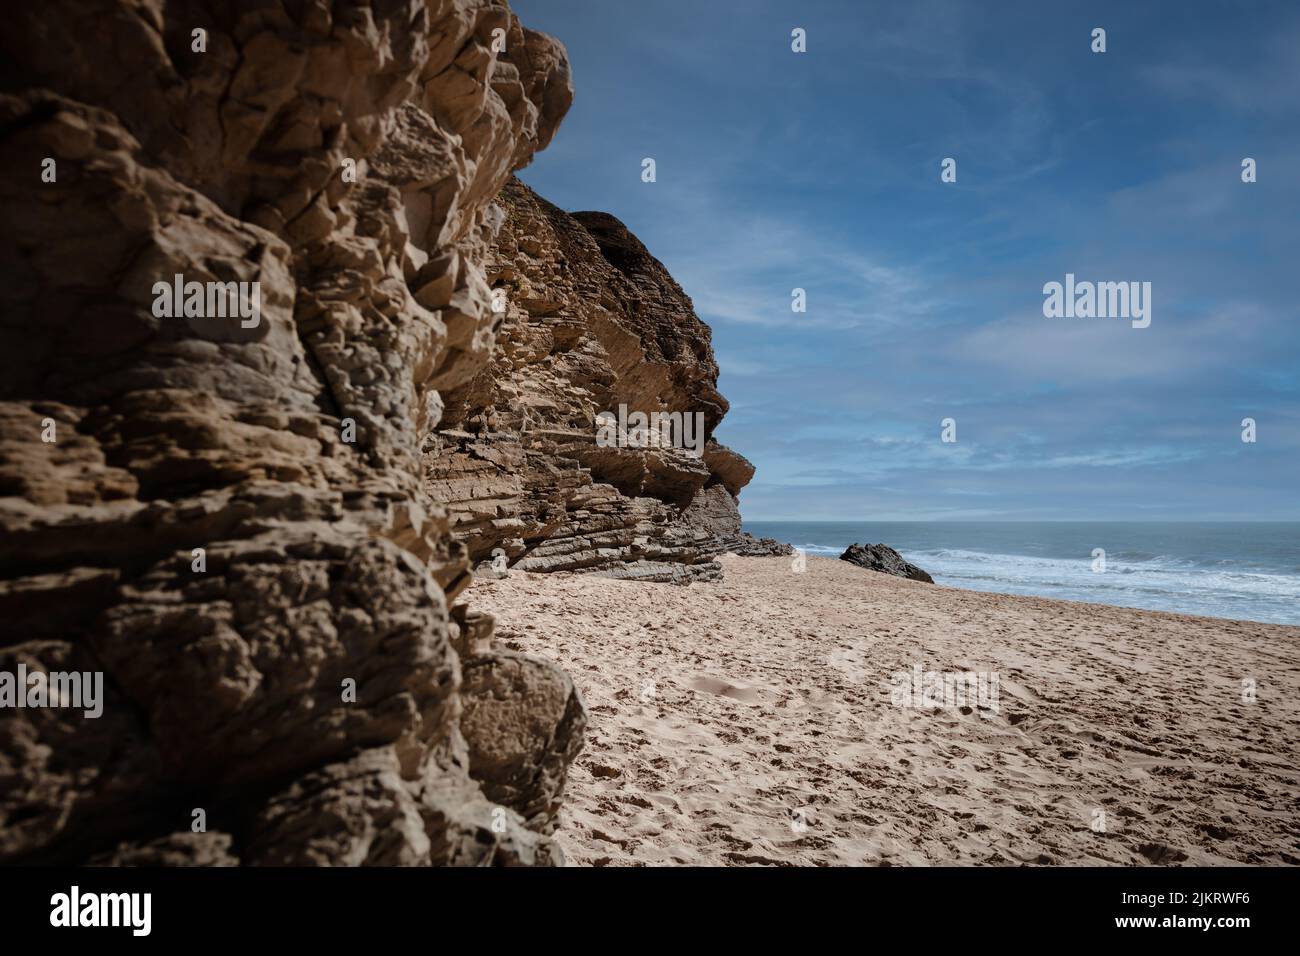 Praia da Murtinheira in Quiaios, Portugal, ein ruhiger und wilder Strand abseits der Menschenmassen. Nahaufnahme von felsigen Küsten, Sand und blauem Himmel. Foto im Landscape-Bild Stockfoto